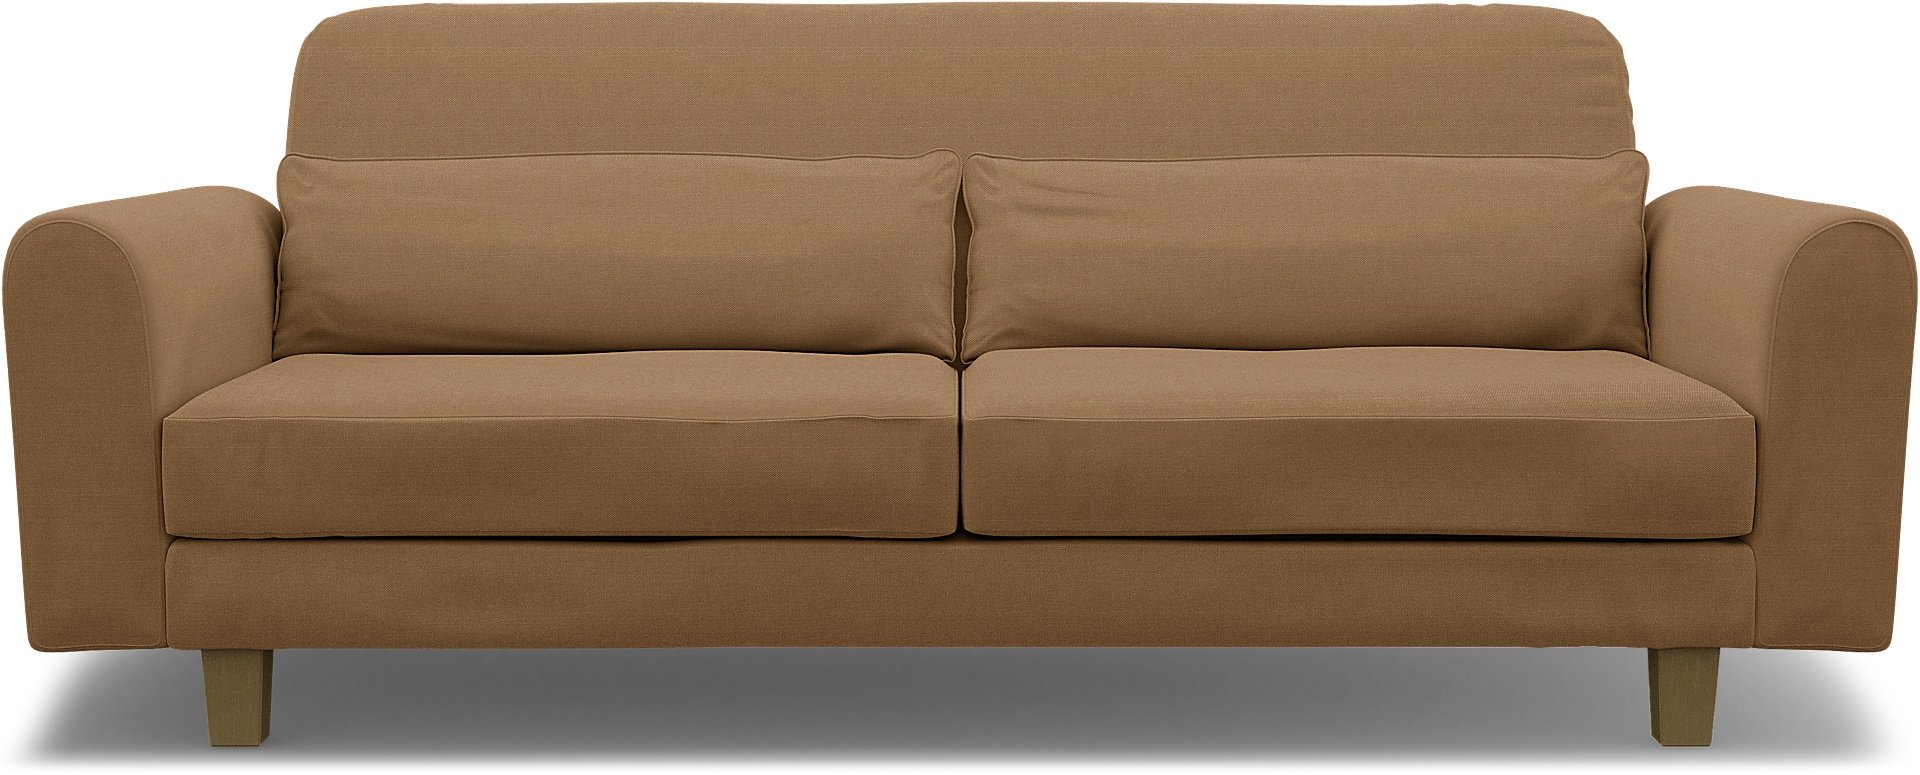 IKEA - Nikkala 3 Seater Sofa Cover, Nougat, Linen - Bemz